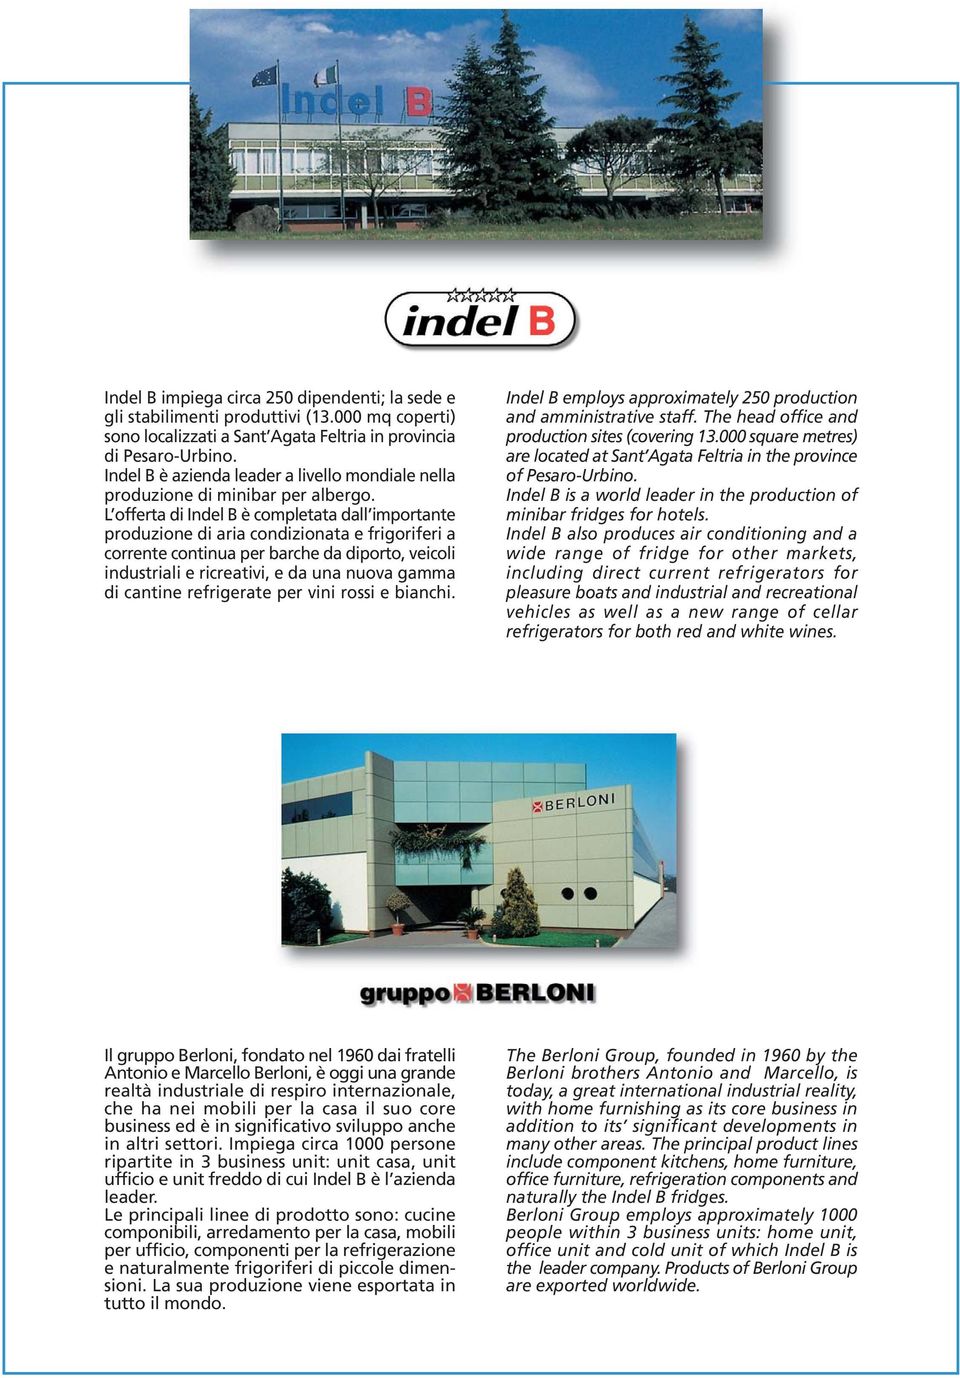 L offerta di Indel B è completata dall importante produzione di aria condizionata e frigoriferi a corrente continua per barche da diporto, veicoli industriali e ricreativi, e da una nuova gamma di